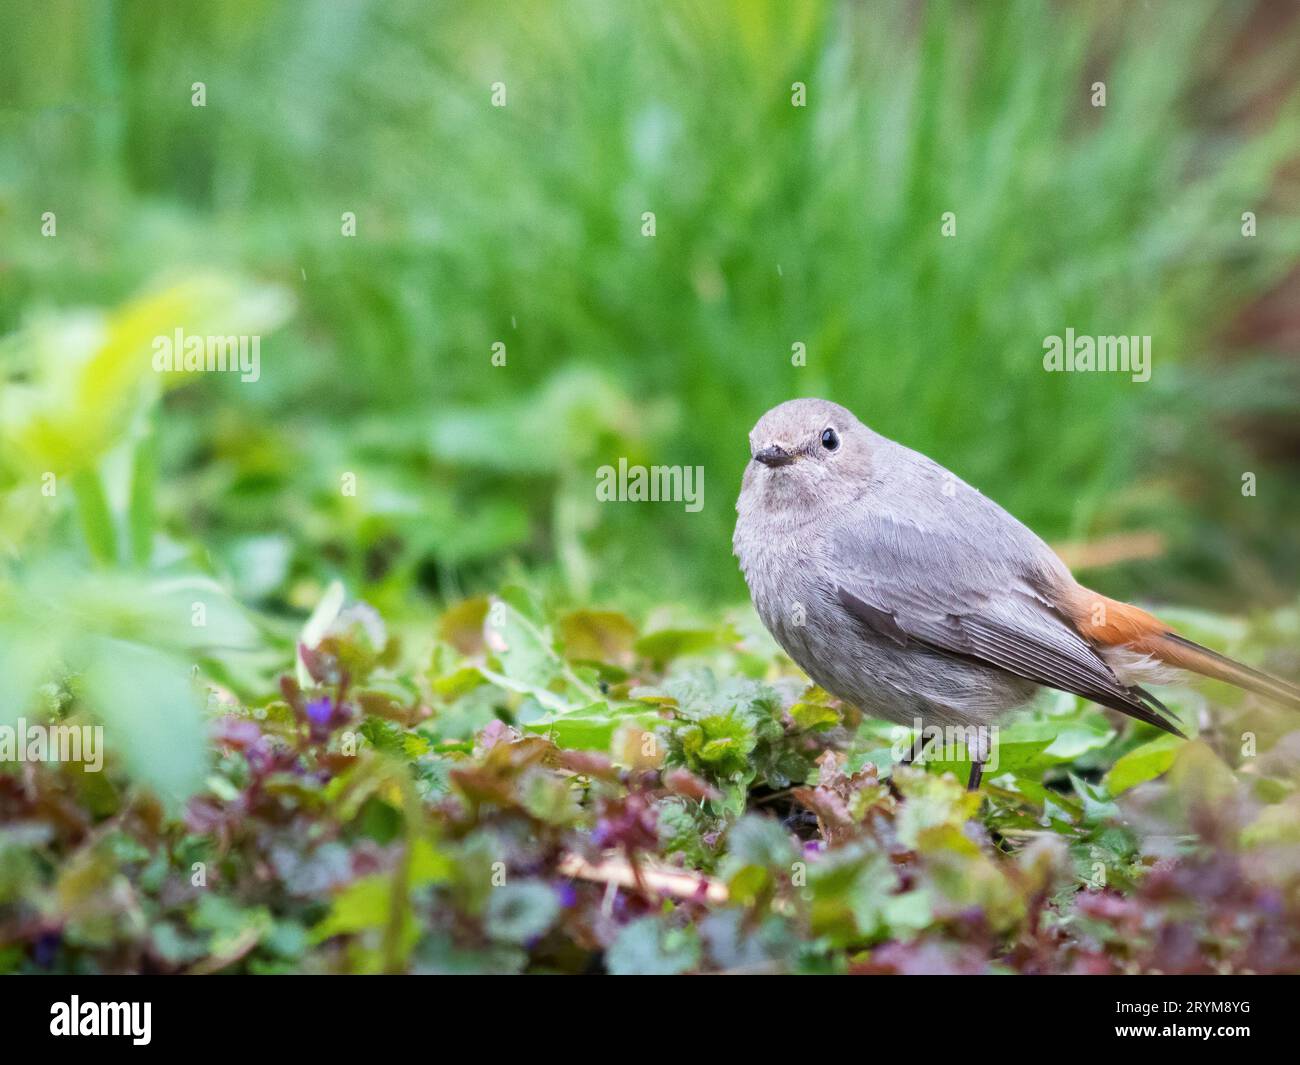 Femmine arrossate comuni (Phoenicurus phoenicurus), o semplicemente arrossamento sull'erba. Piccolo uccello passerino del genere Phoenicurus Foto Stock